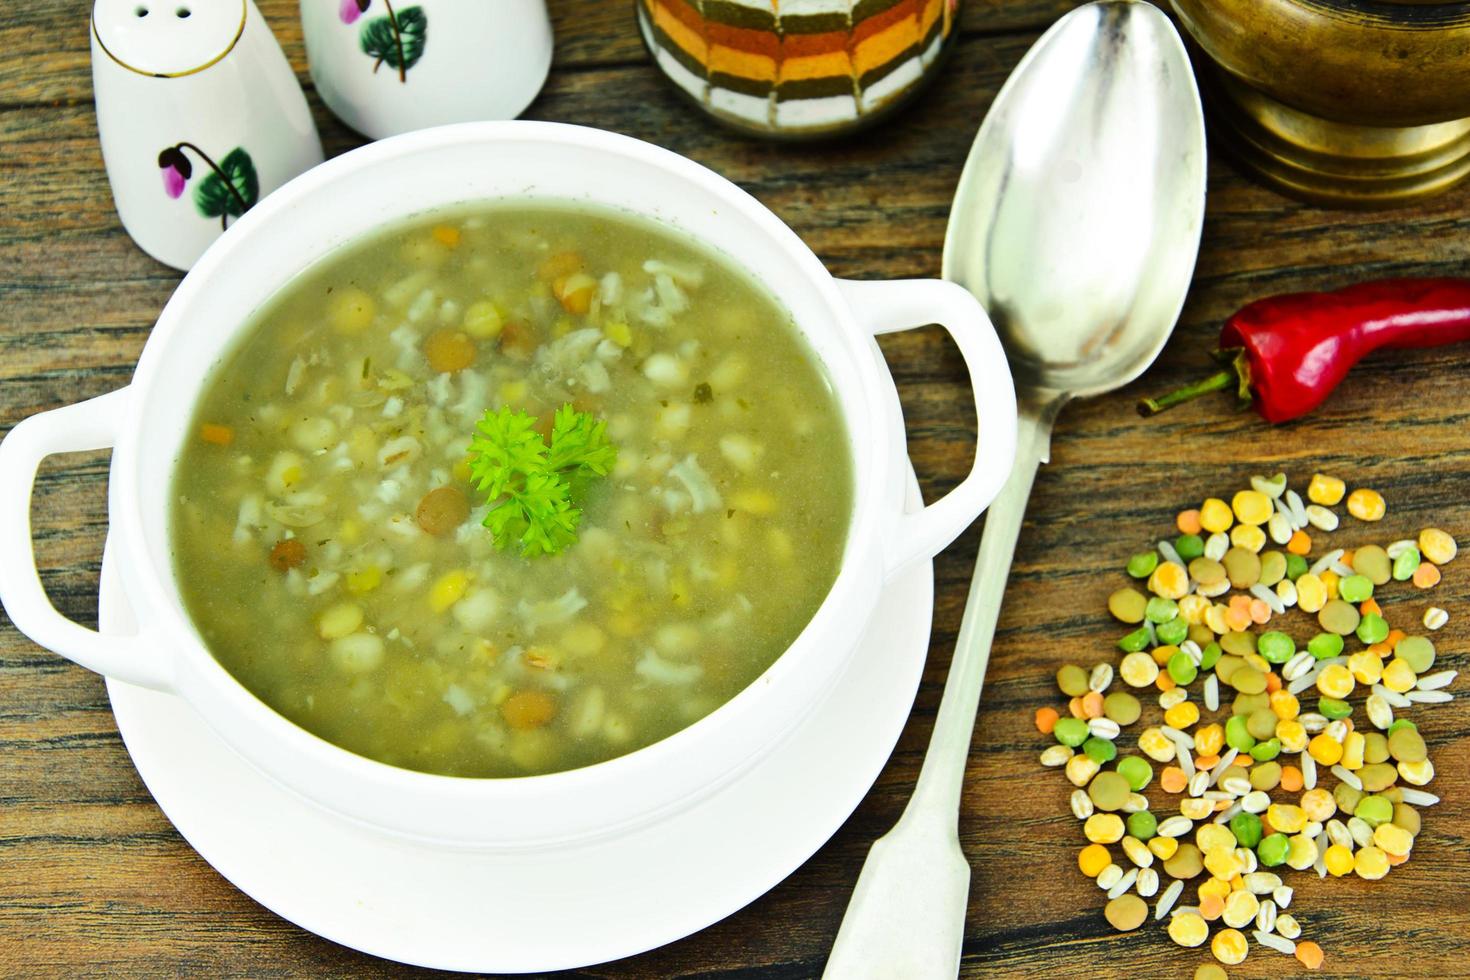 la zuppa di lenticchie, piselli, ceci, riso, orzo, verdura secca foto